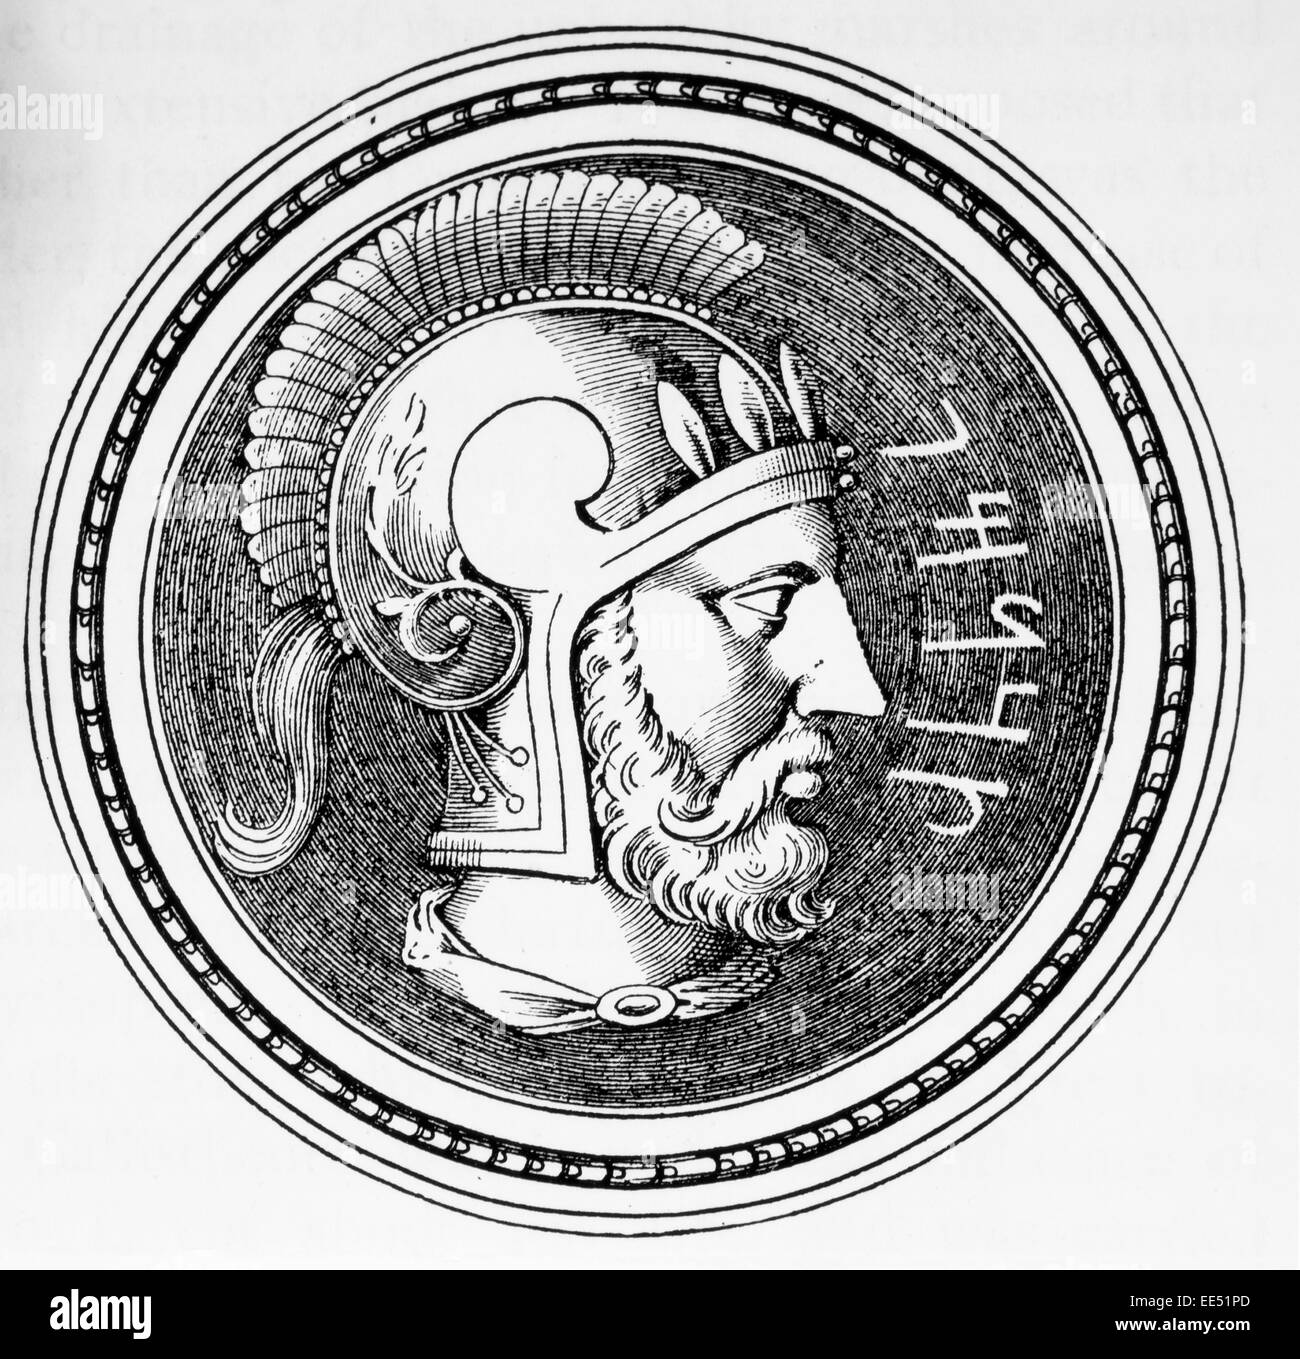 Hannibal (247-183 BC), commandant militaire carthaginoise Banque D'Images